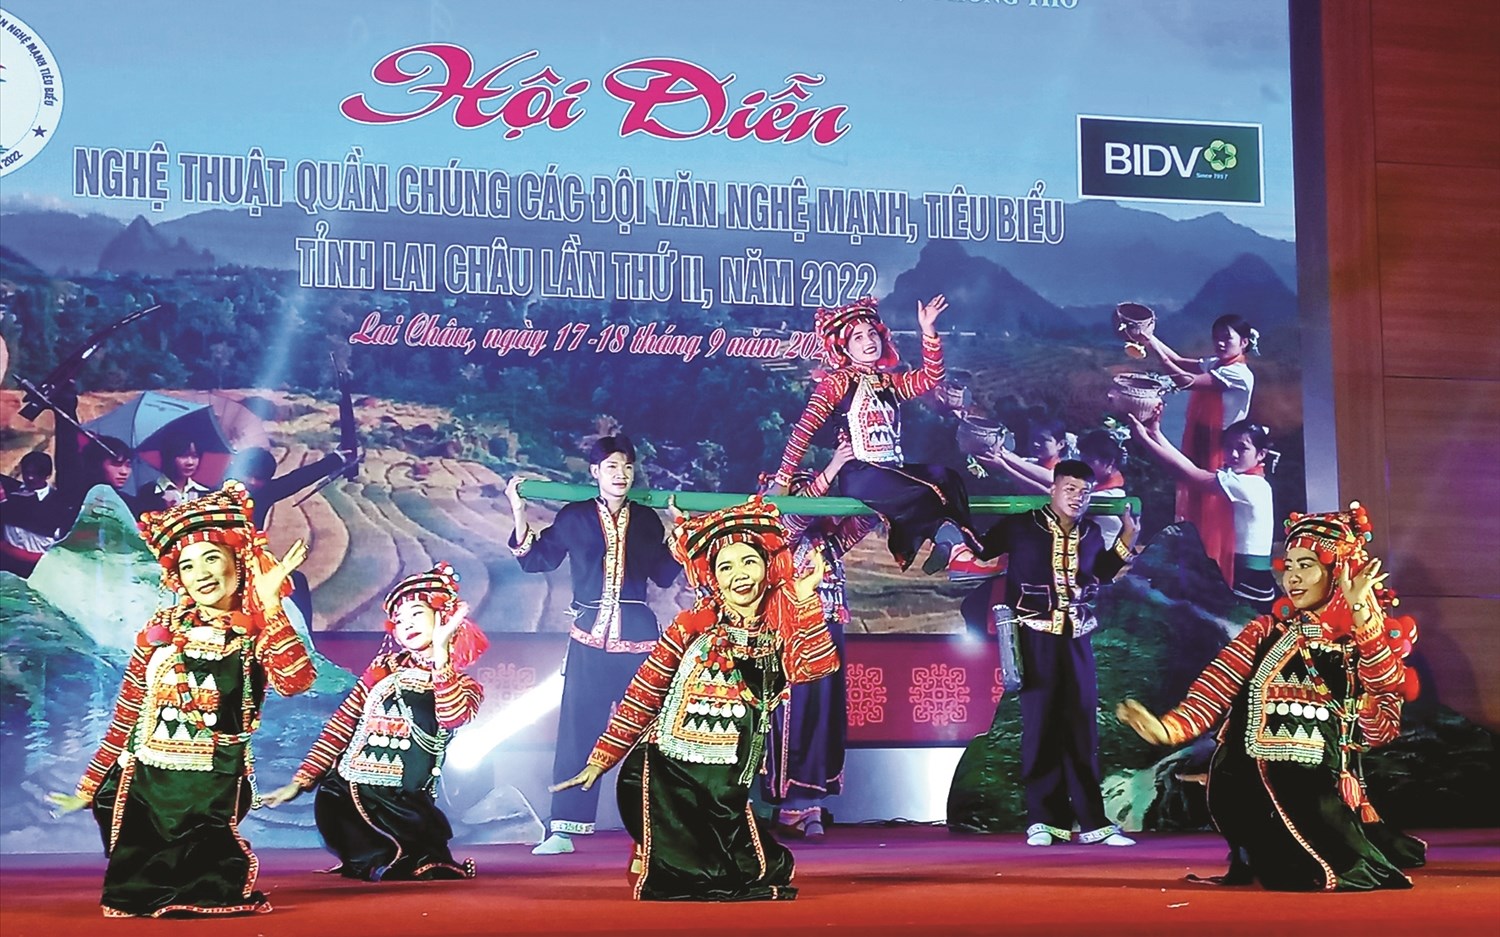 Một tiết mục múa chất liệu dân tộc Hà Nhì (Đoàn huyện Mường Tè) tham gia Hội diễn nghệ thuật quần chúng các đội văn nghệ mạnh tiêu biểu năm 2022